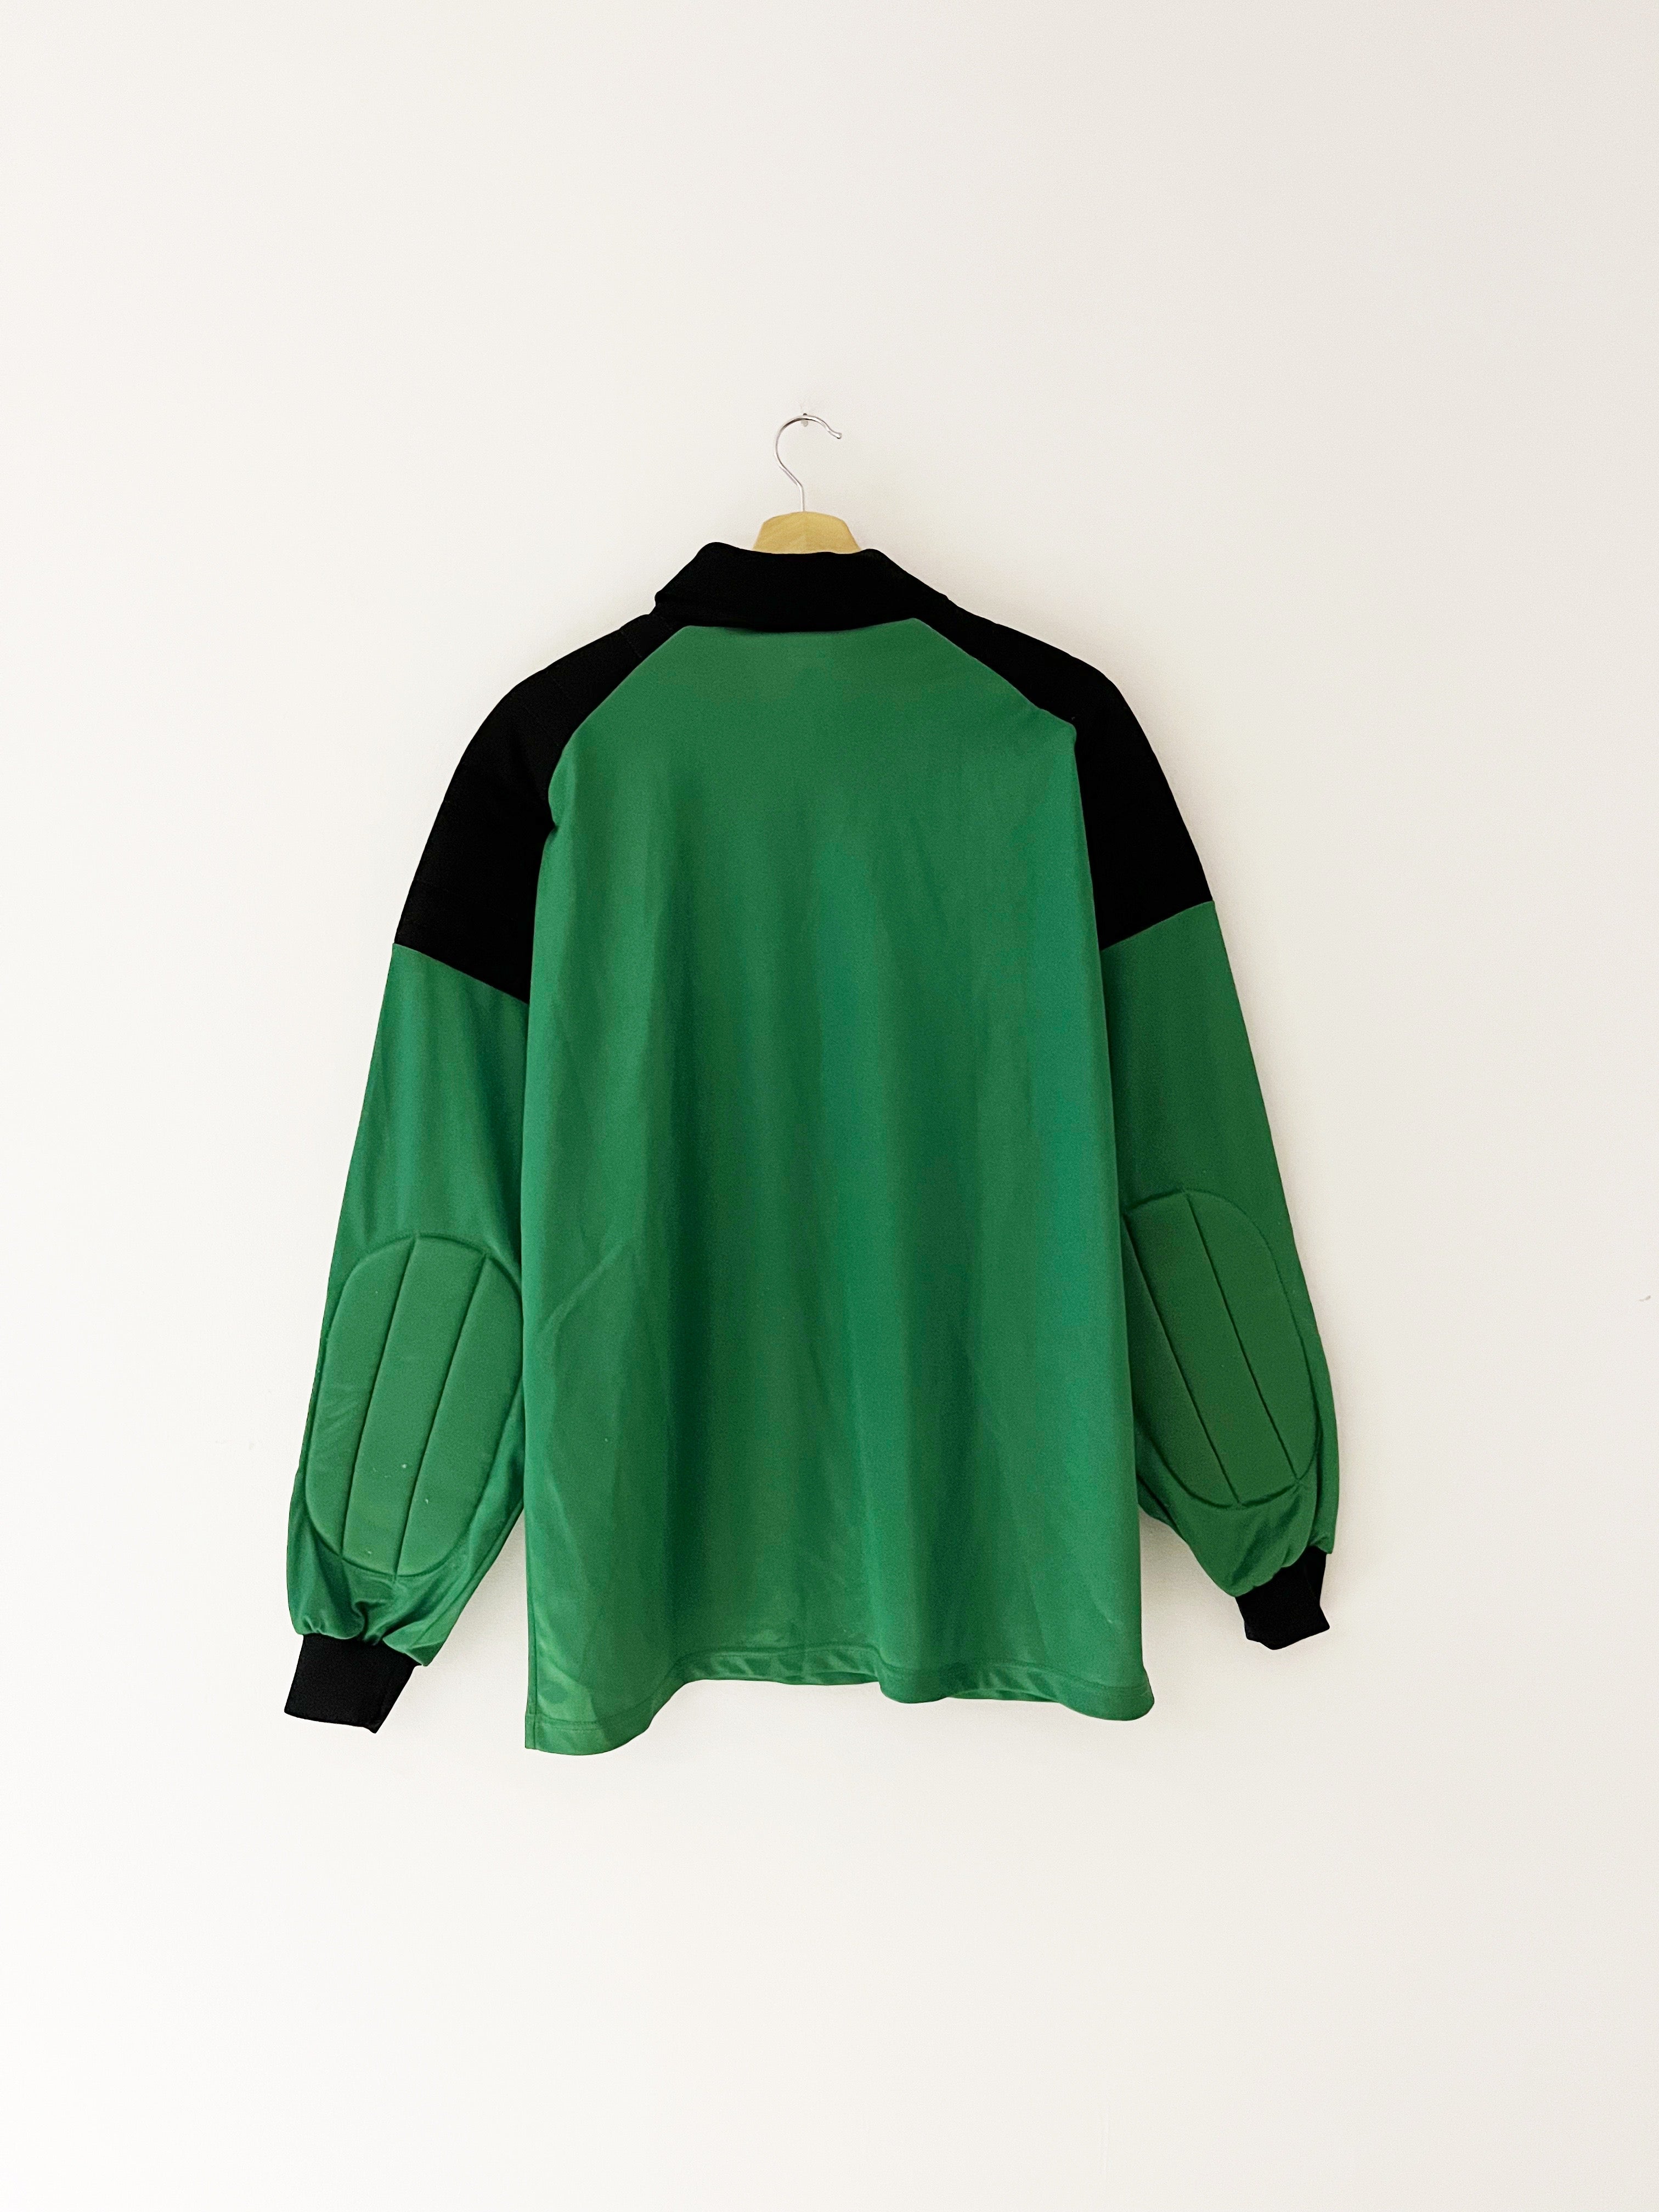 Camiseta del Liverpool GK 1992/93 (L/XL) 8.5/10